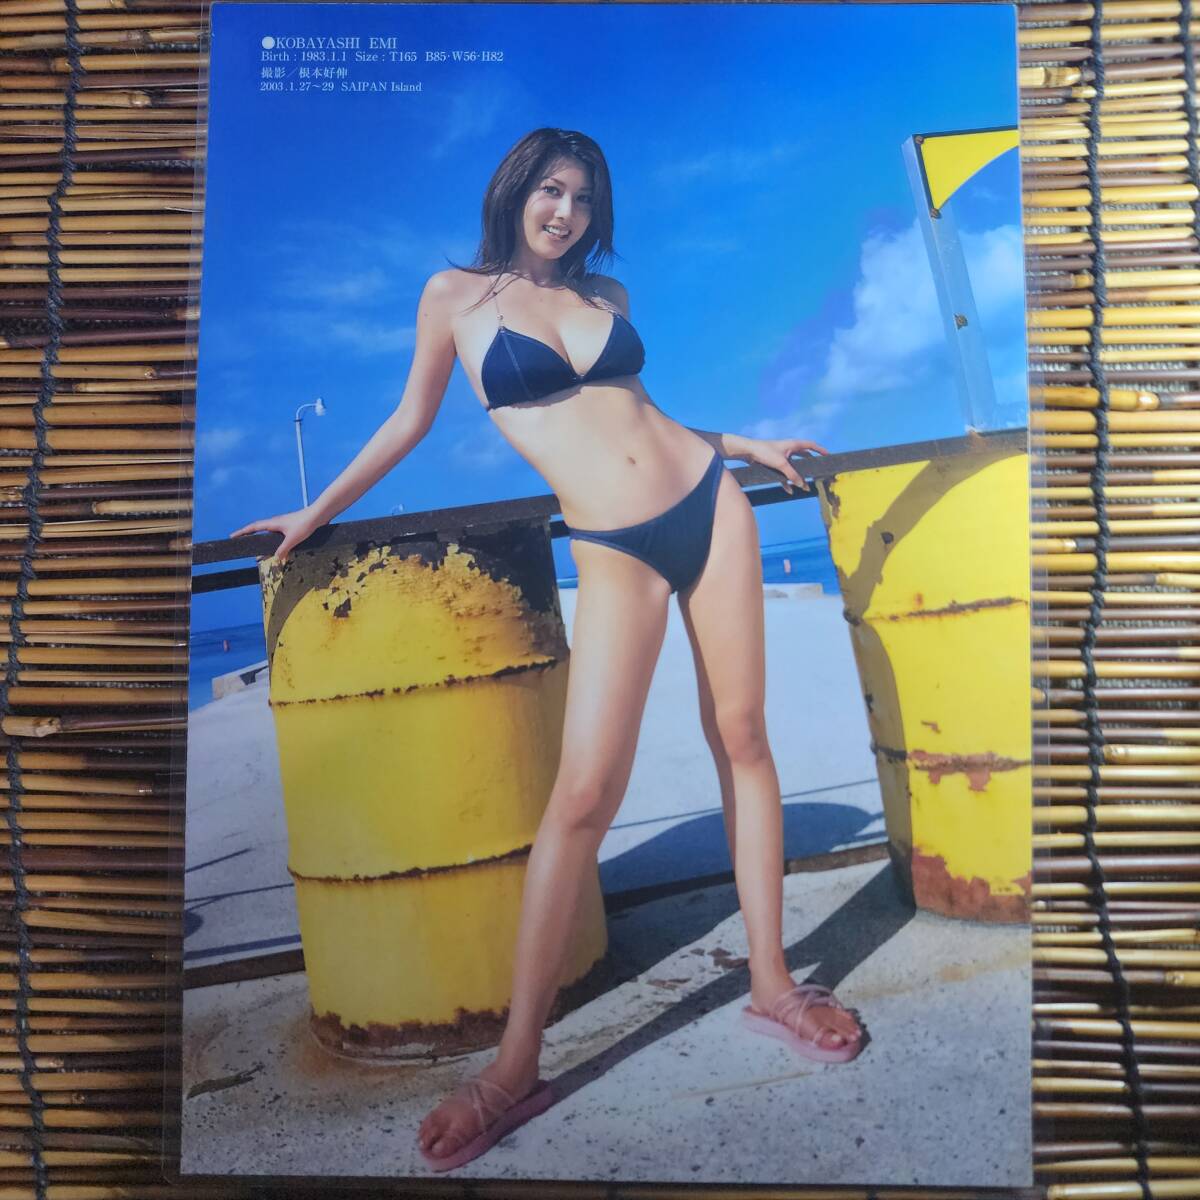 [ высокое качество толстый 150μ ламинирование обработка ] Kobayashi . прекрасный yamagaBIKiNIES2004.1.27 купальный костюм A4 журнал вырезки 6 страница [ bikini model ]